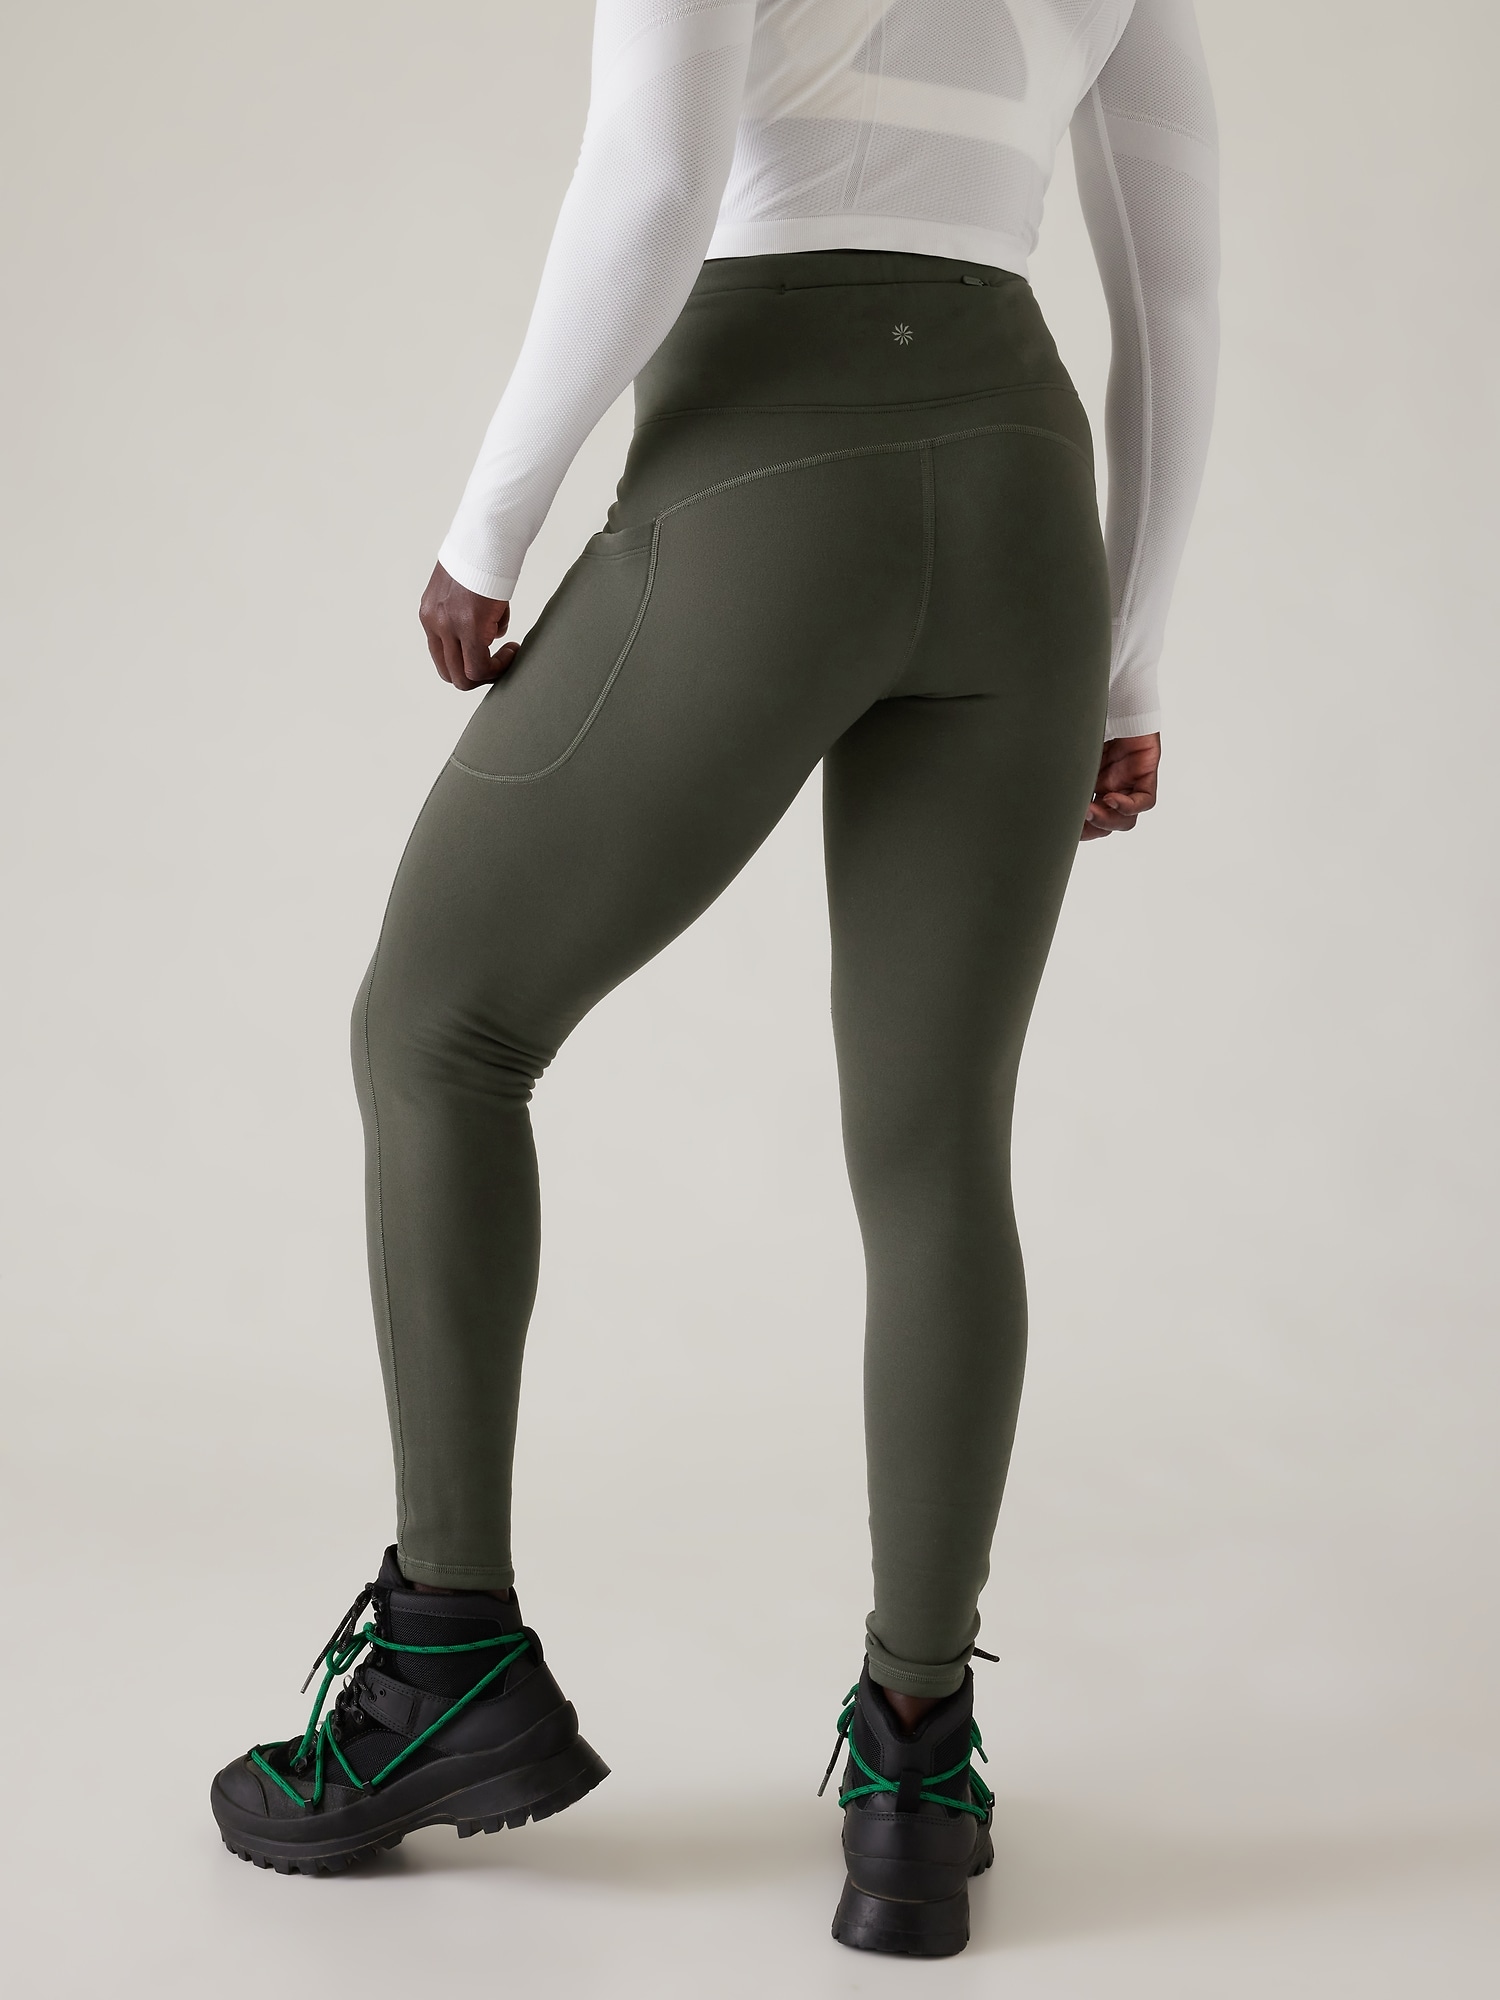 Power Reflective Workout Leggings - Full Length, Women's Leggings